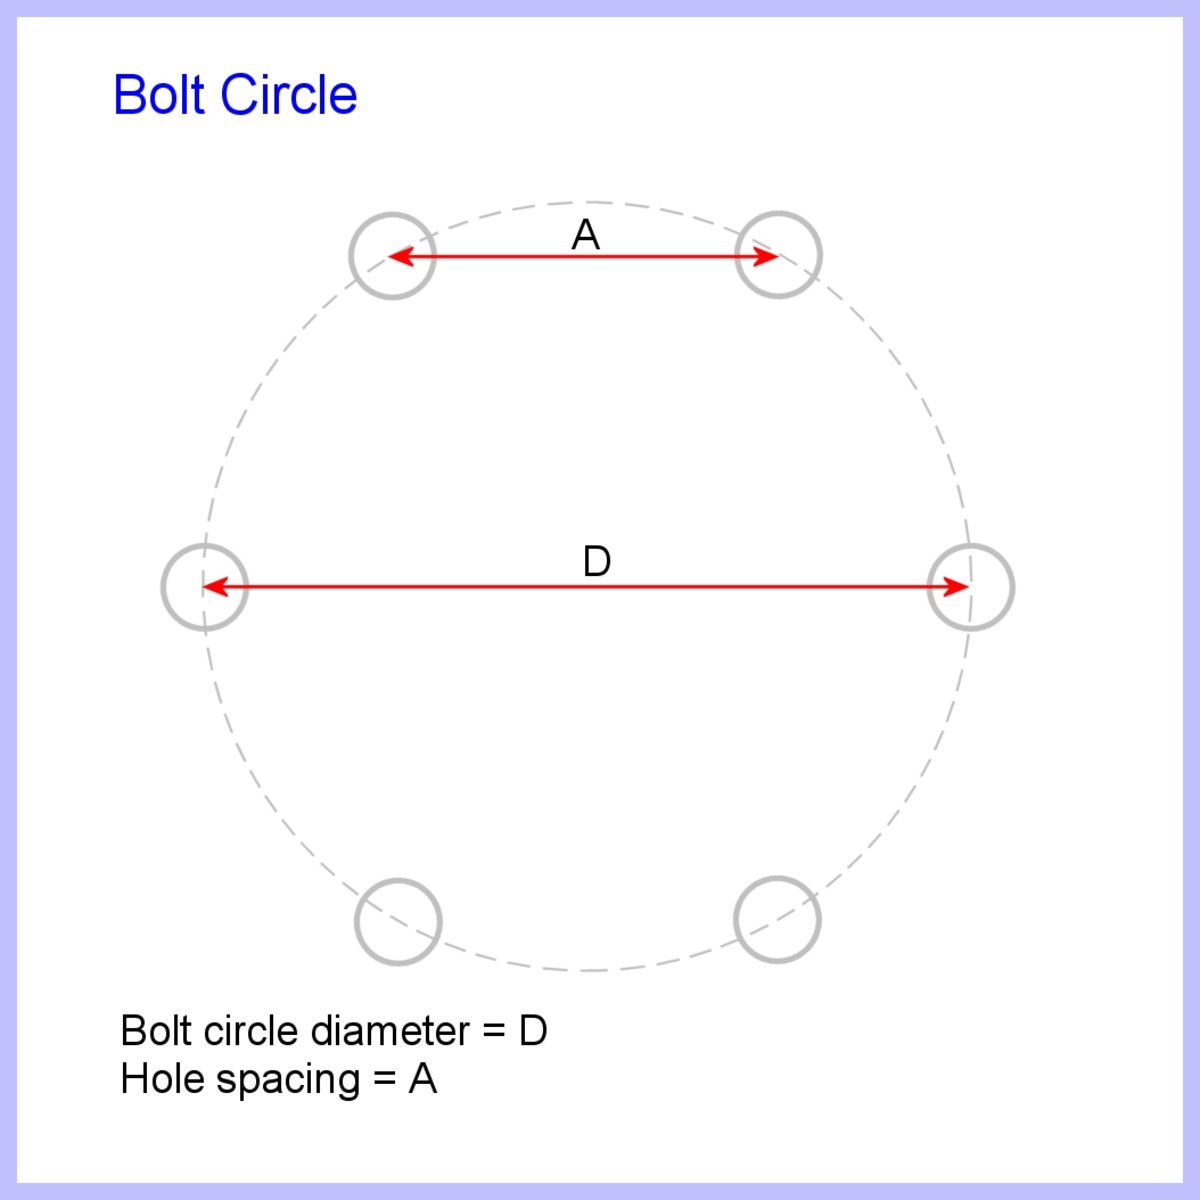 Imaginary bolt circle